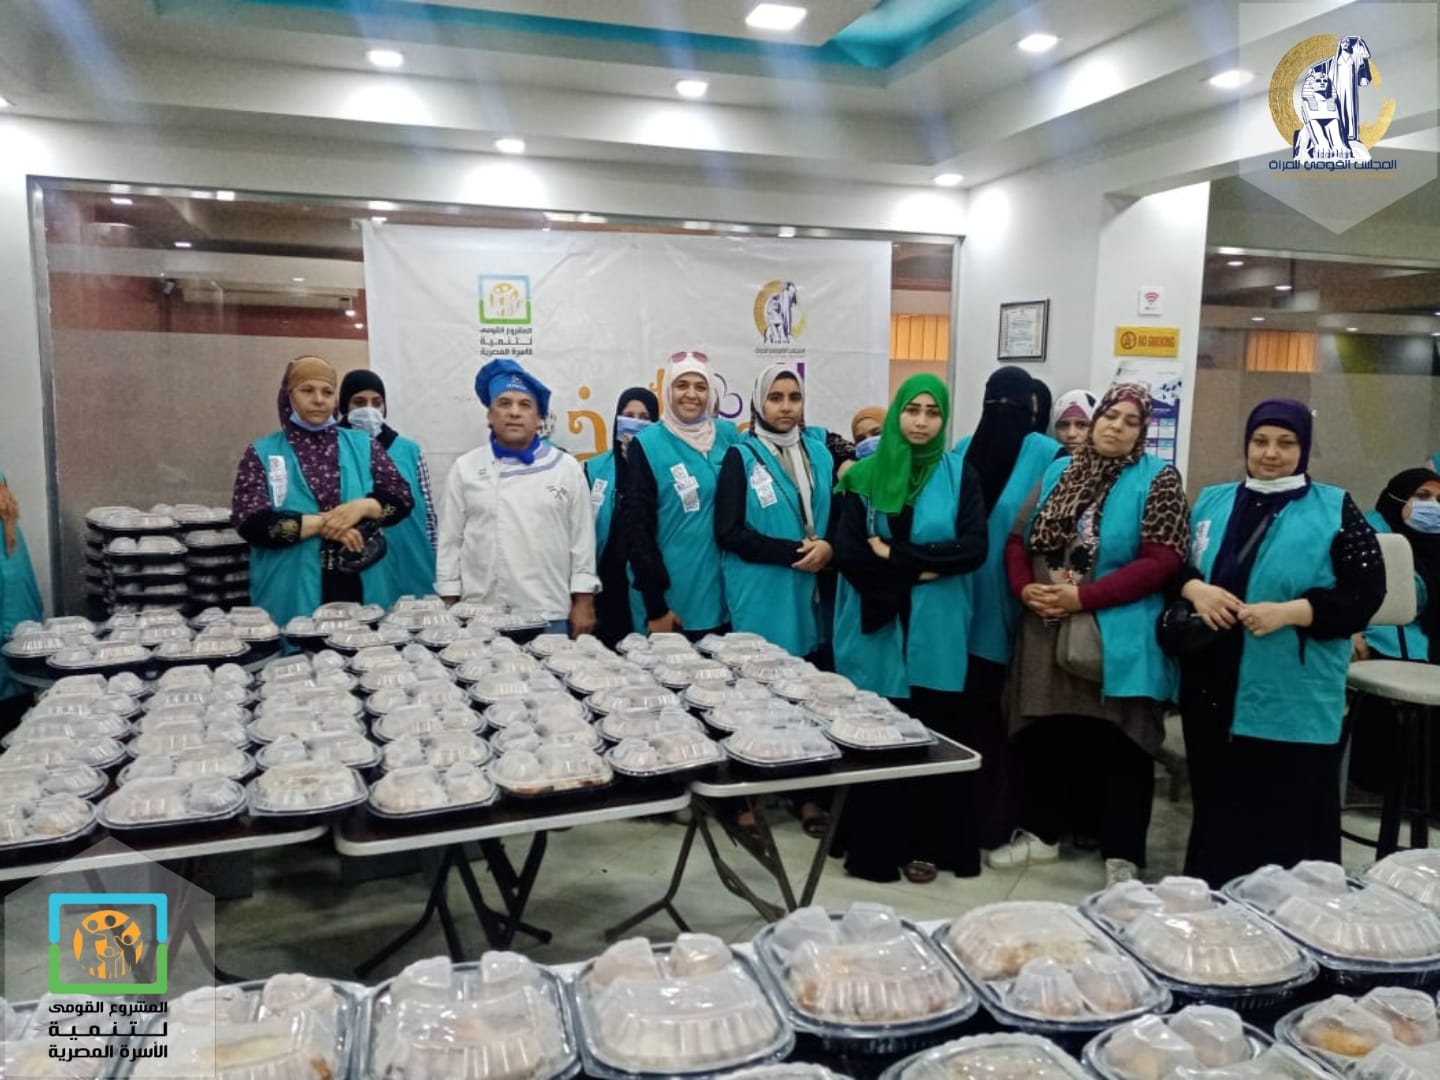 دعم سيدات قري حياة كريمة عبر برنامج مطبخ المصرية